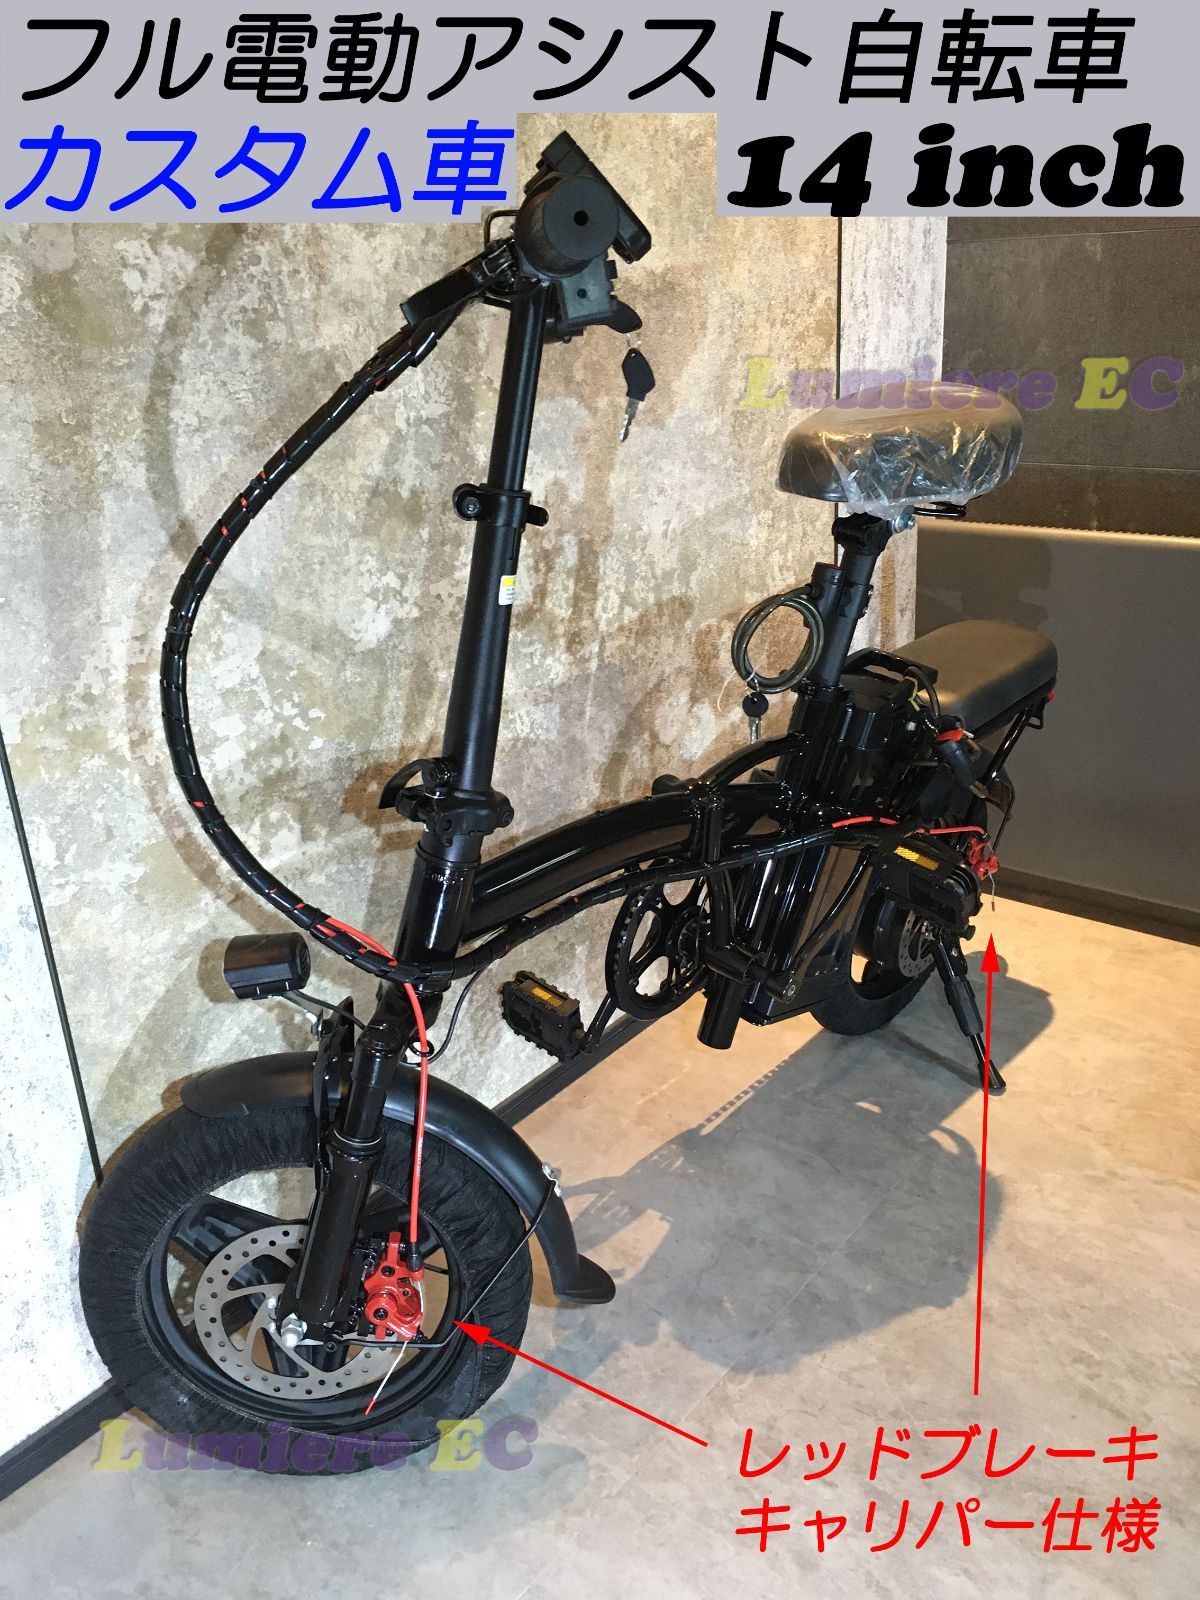 フル電動自転車(ひねちゃ)ラスト1台 リミッター解除済み、8ah大容量 